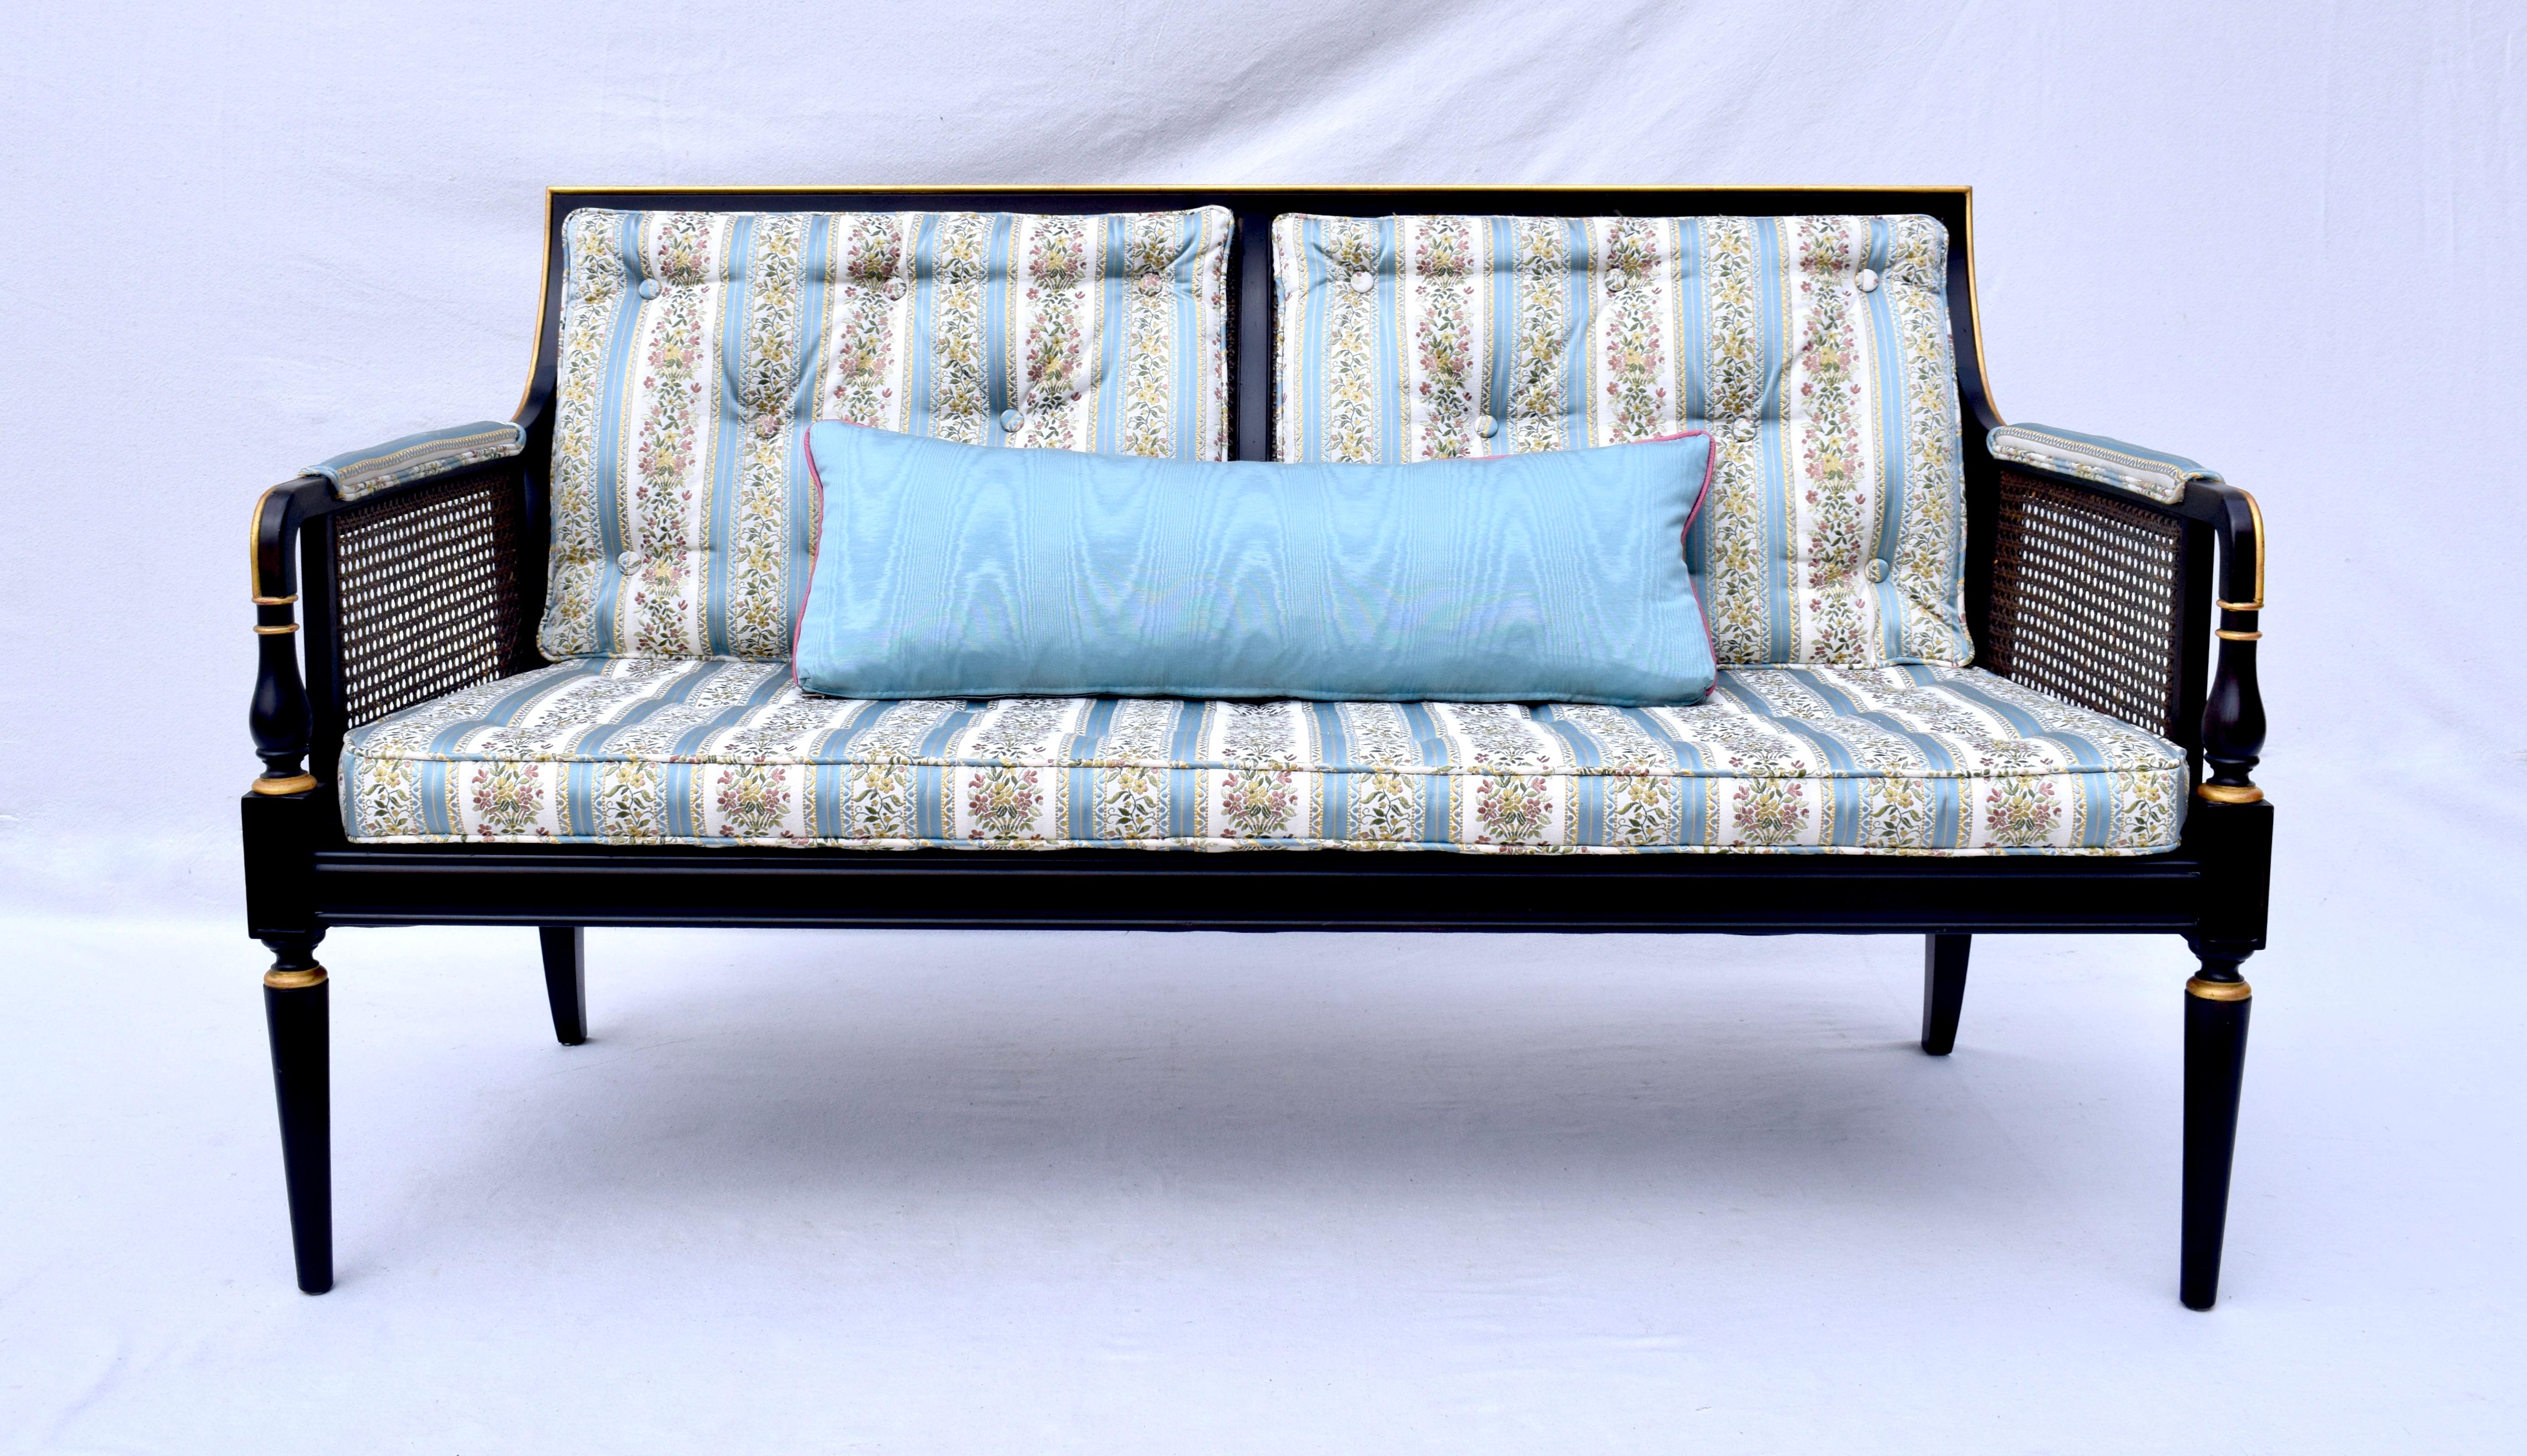 Canapé de style Regency de Baker Furniture en laque noire d'origine avec des accents dorés, tapissé d'un tissu floral brodé bleu et blanc. Des lignes exquises et légères, rarement utilisées  condition. Siège : 26.5